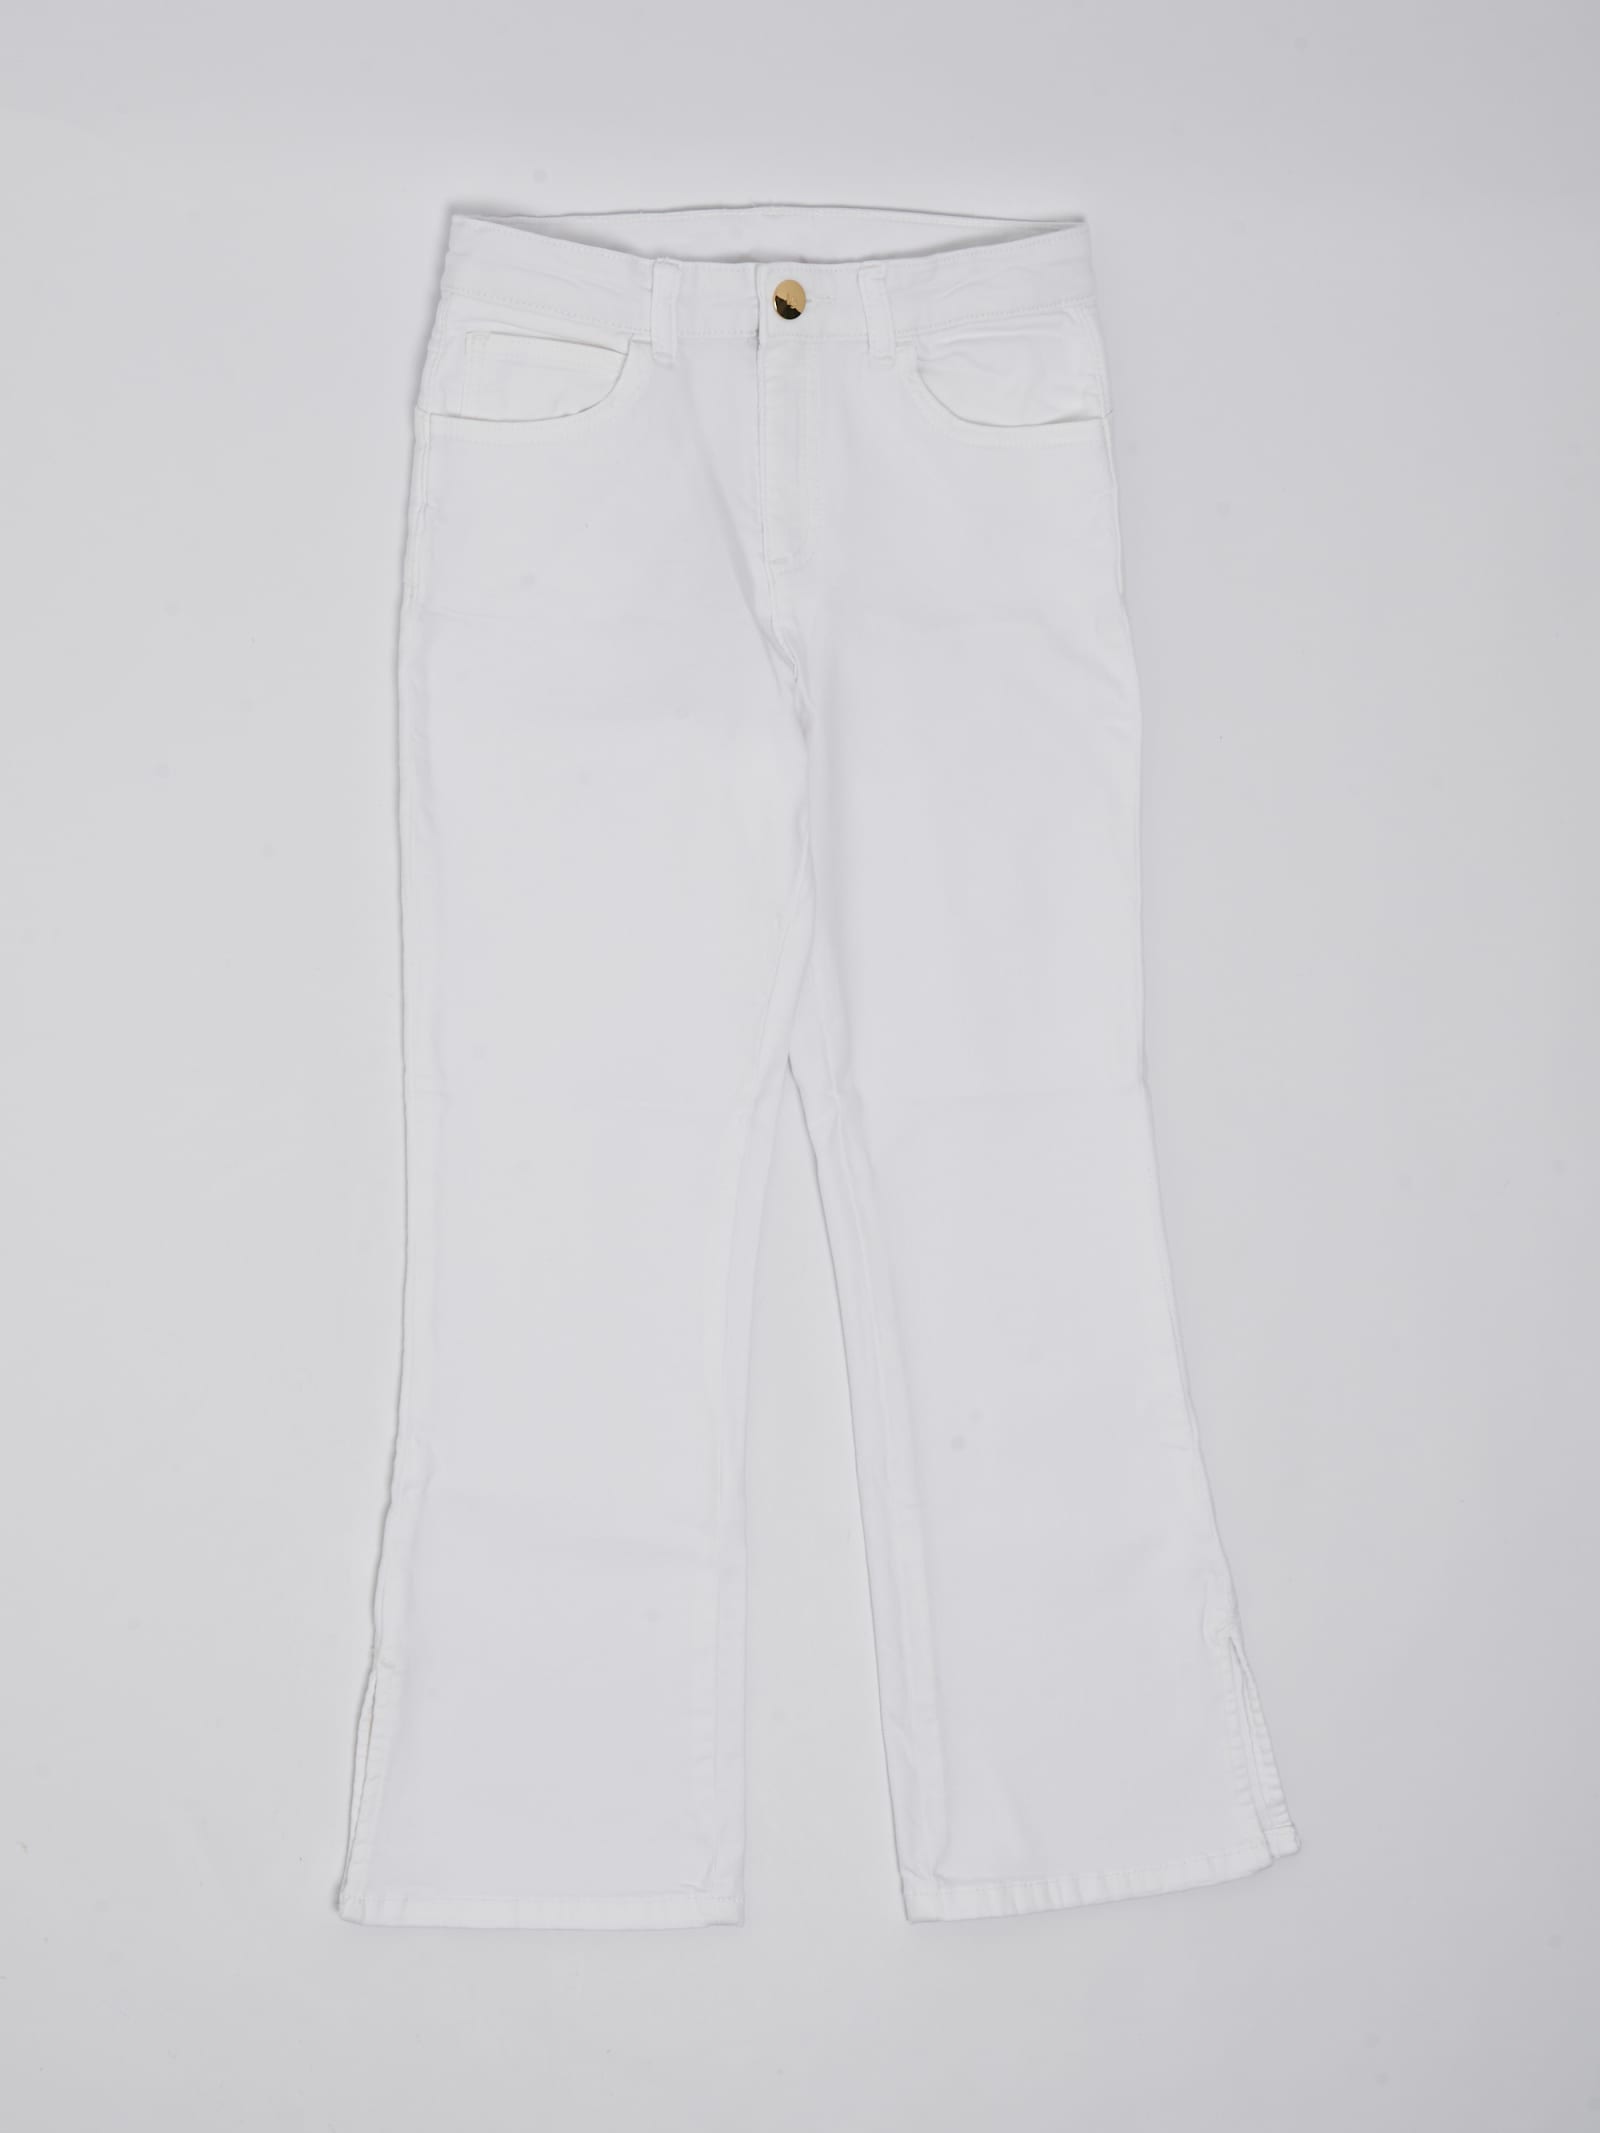 Liu •jo Kids' Trousers Trousers In Bianco